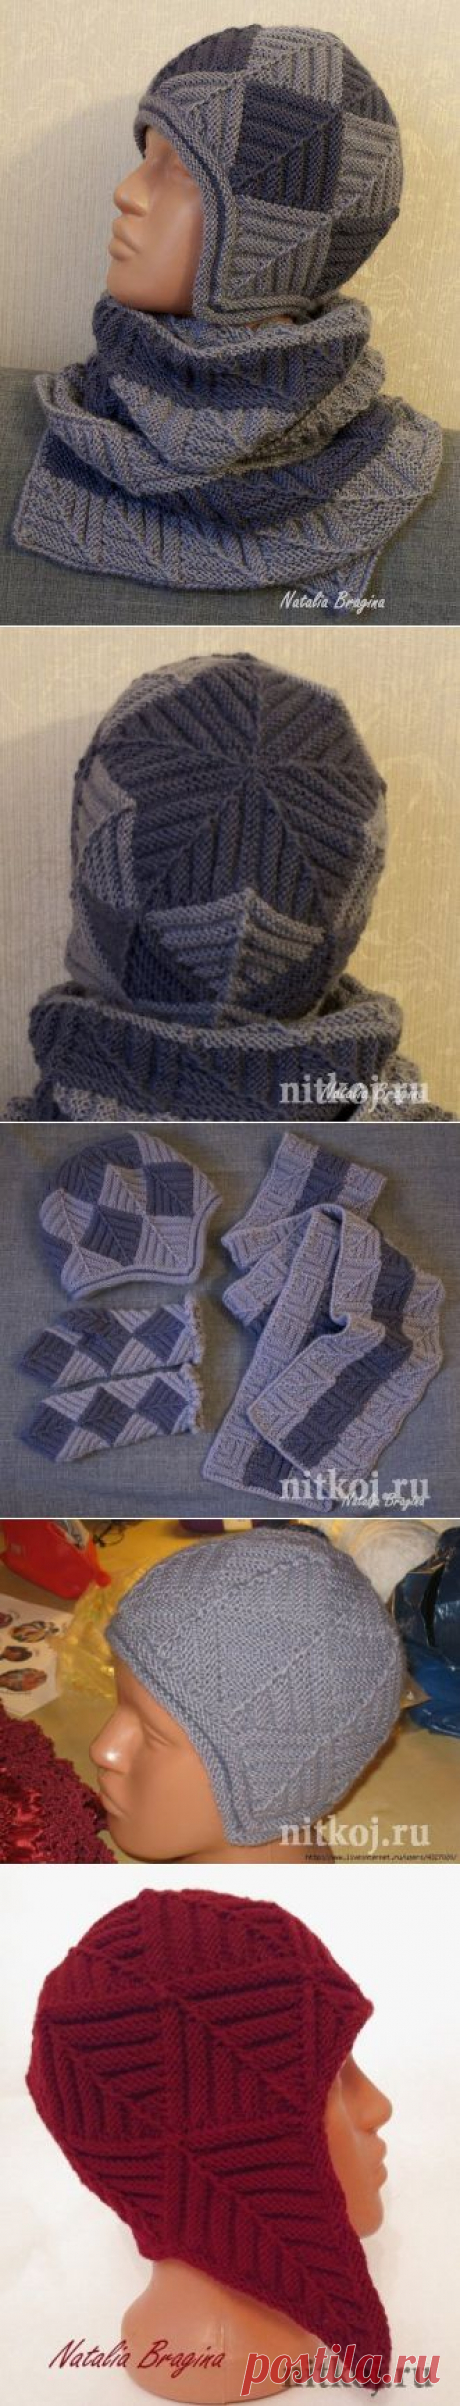 Двойная шапка спицами от Natalia Bragina » Ниткой - вязаные вещи для вашего дома, вязание крючком, вязание спицами, схемы вязания